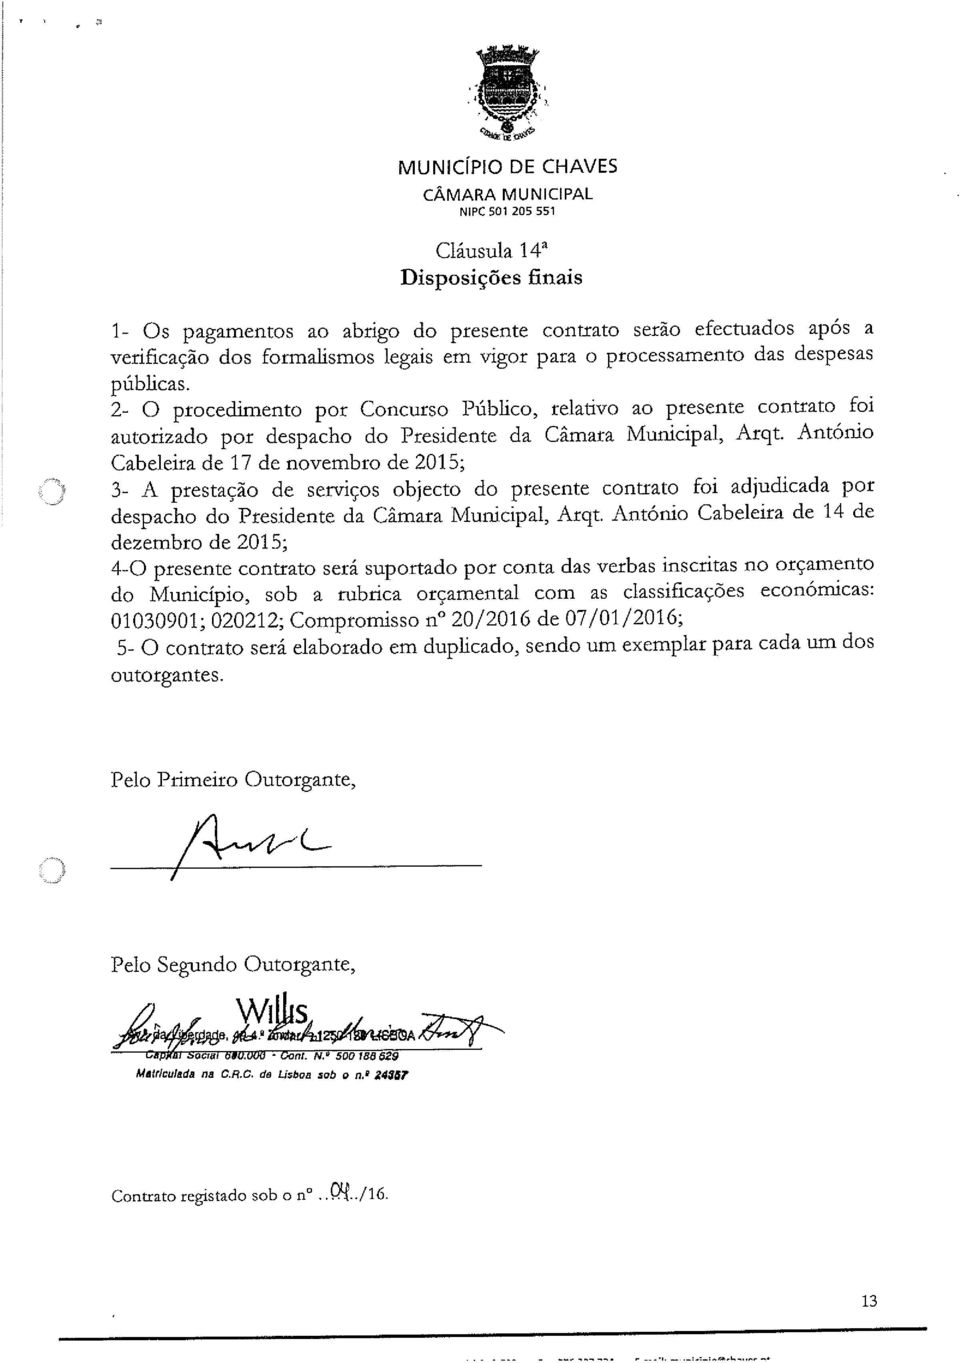 António Cabeleira de 17 de novembro de 2015; 3- A prestação de serviços objecto do presente contrato foi adjudicada por despacho do Presidente da Câmara Municipal, Arqt.